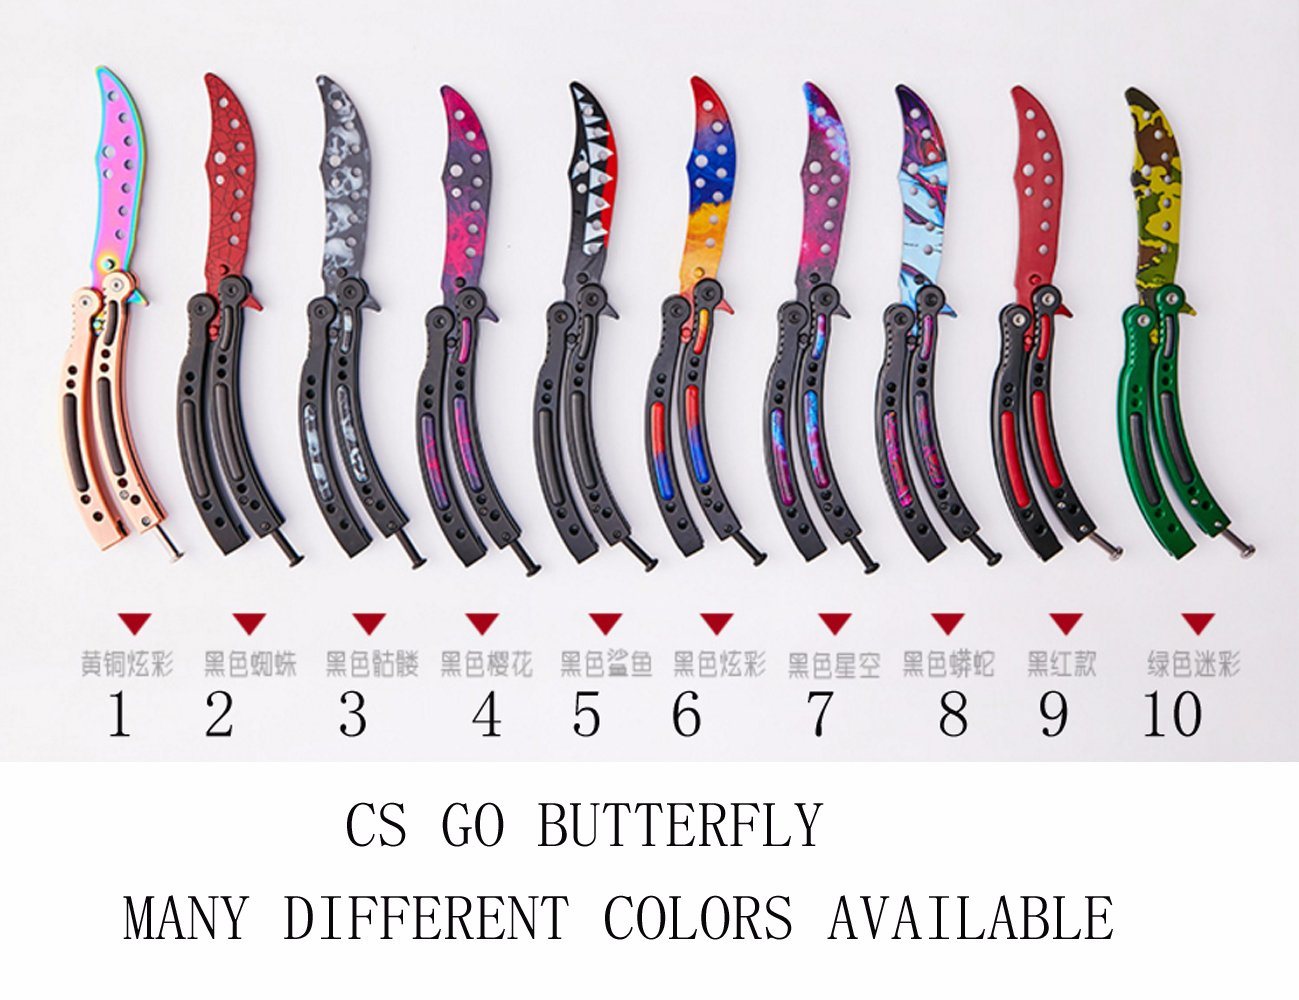 CS Go Butterfly Knife